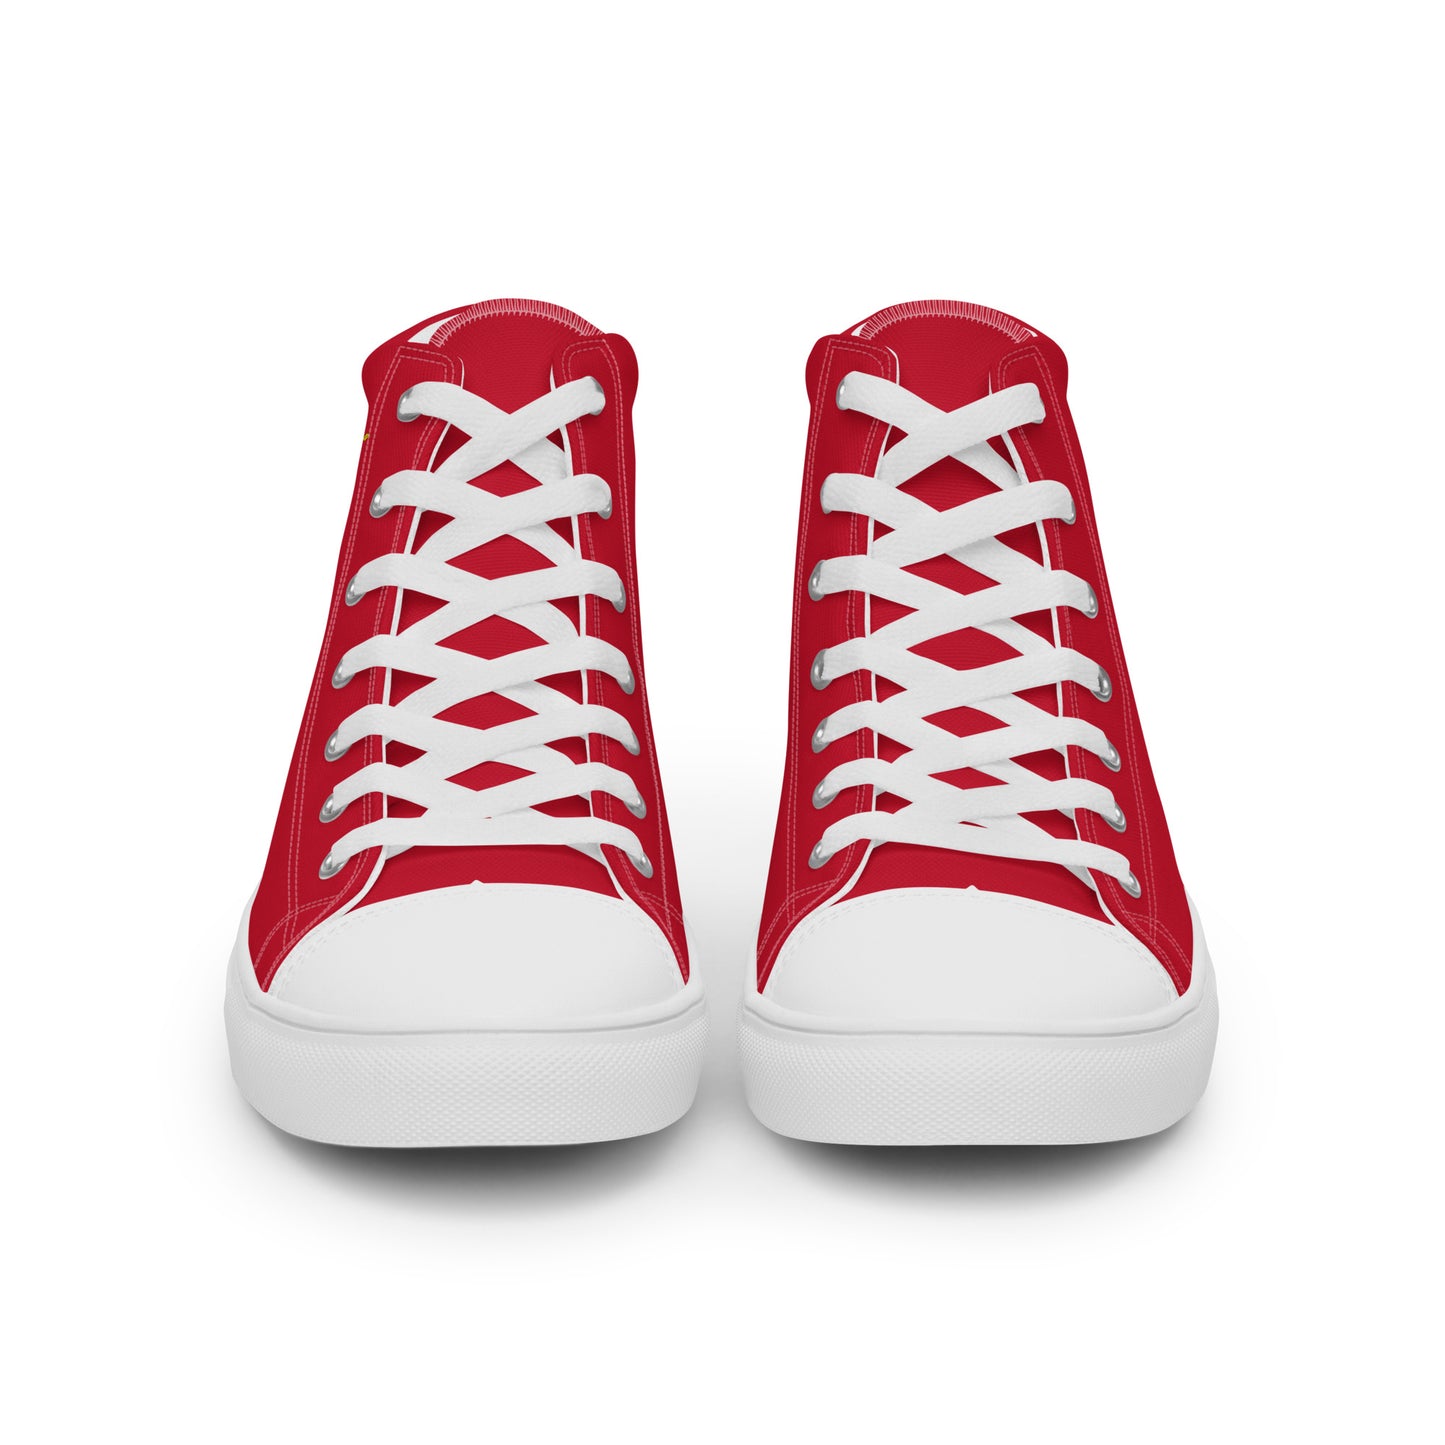 Perú - Men - Red - High top shoes